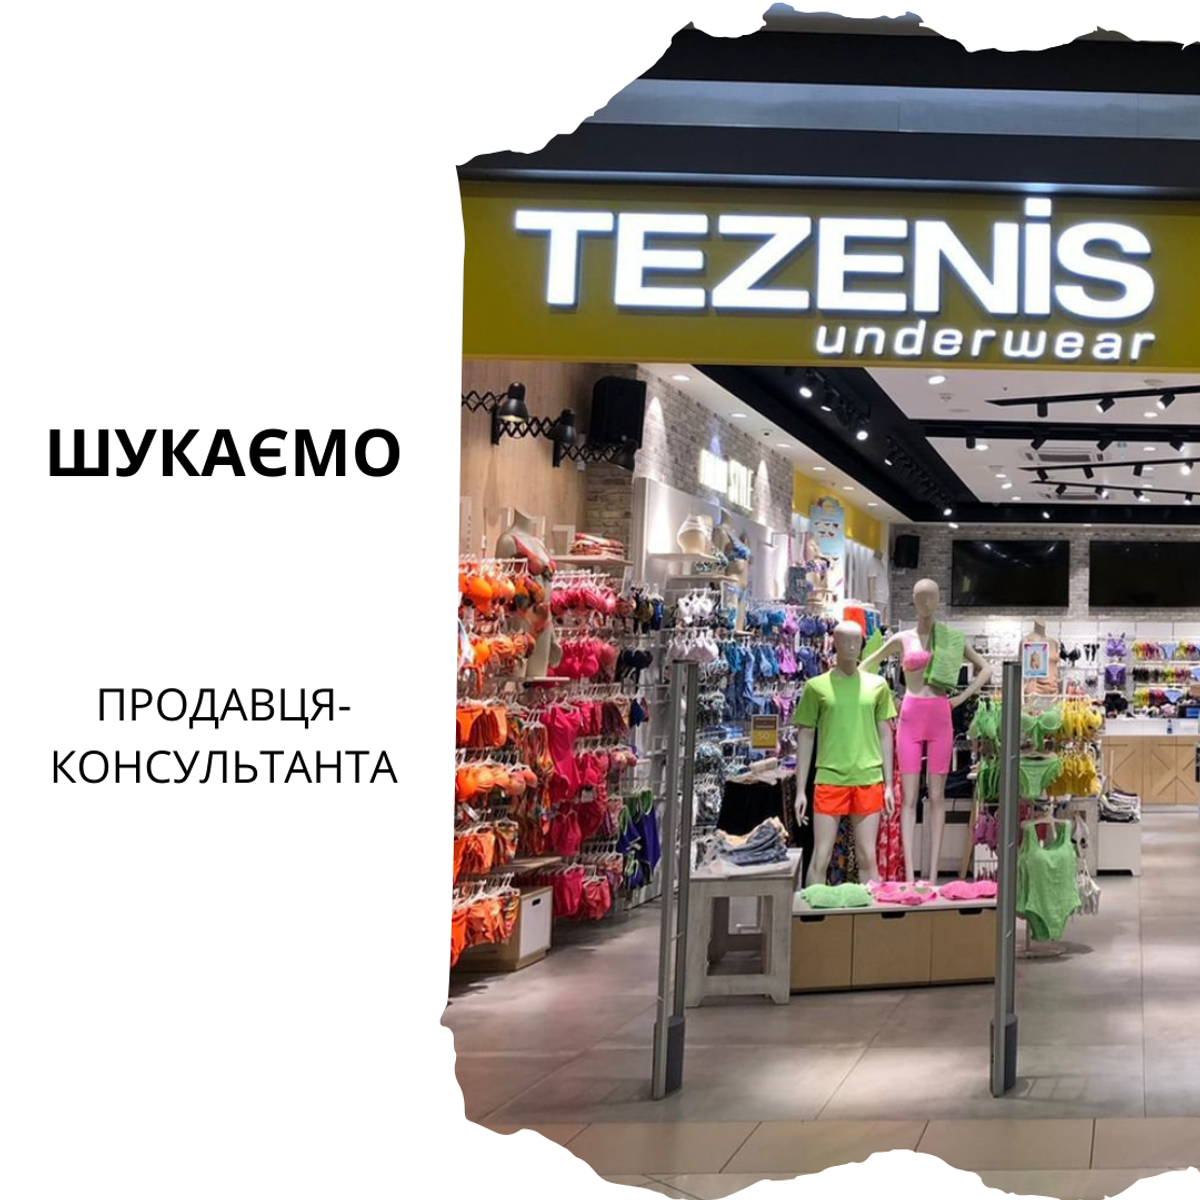 Вакансия по магазину TEZENIS